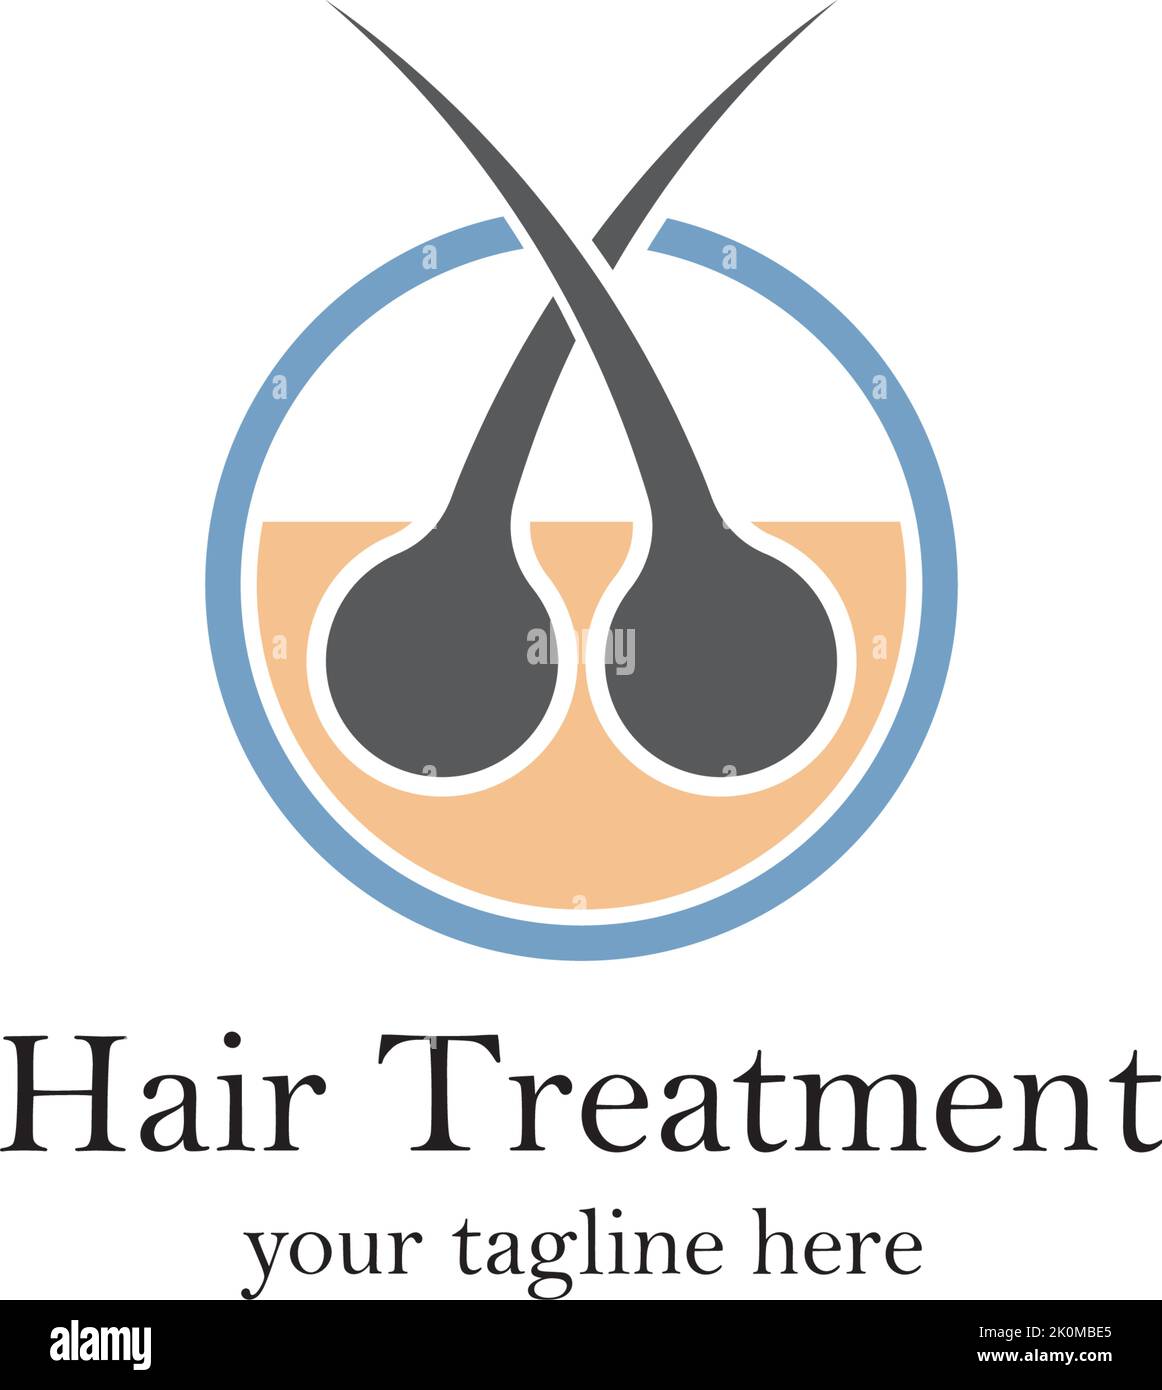 Hair treatment logo vector icon template Stock Vector